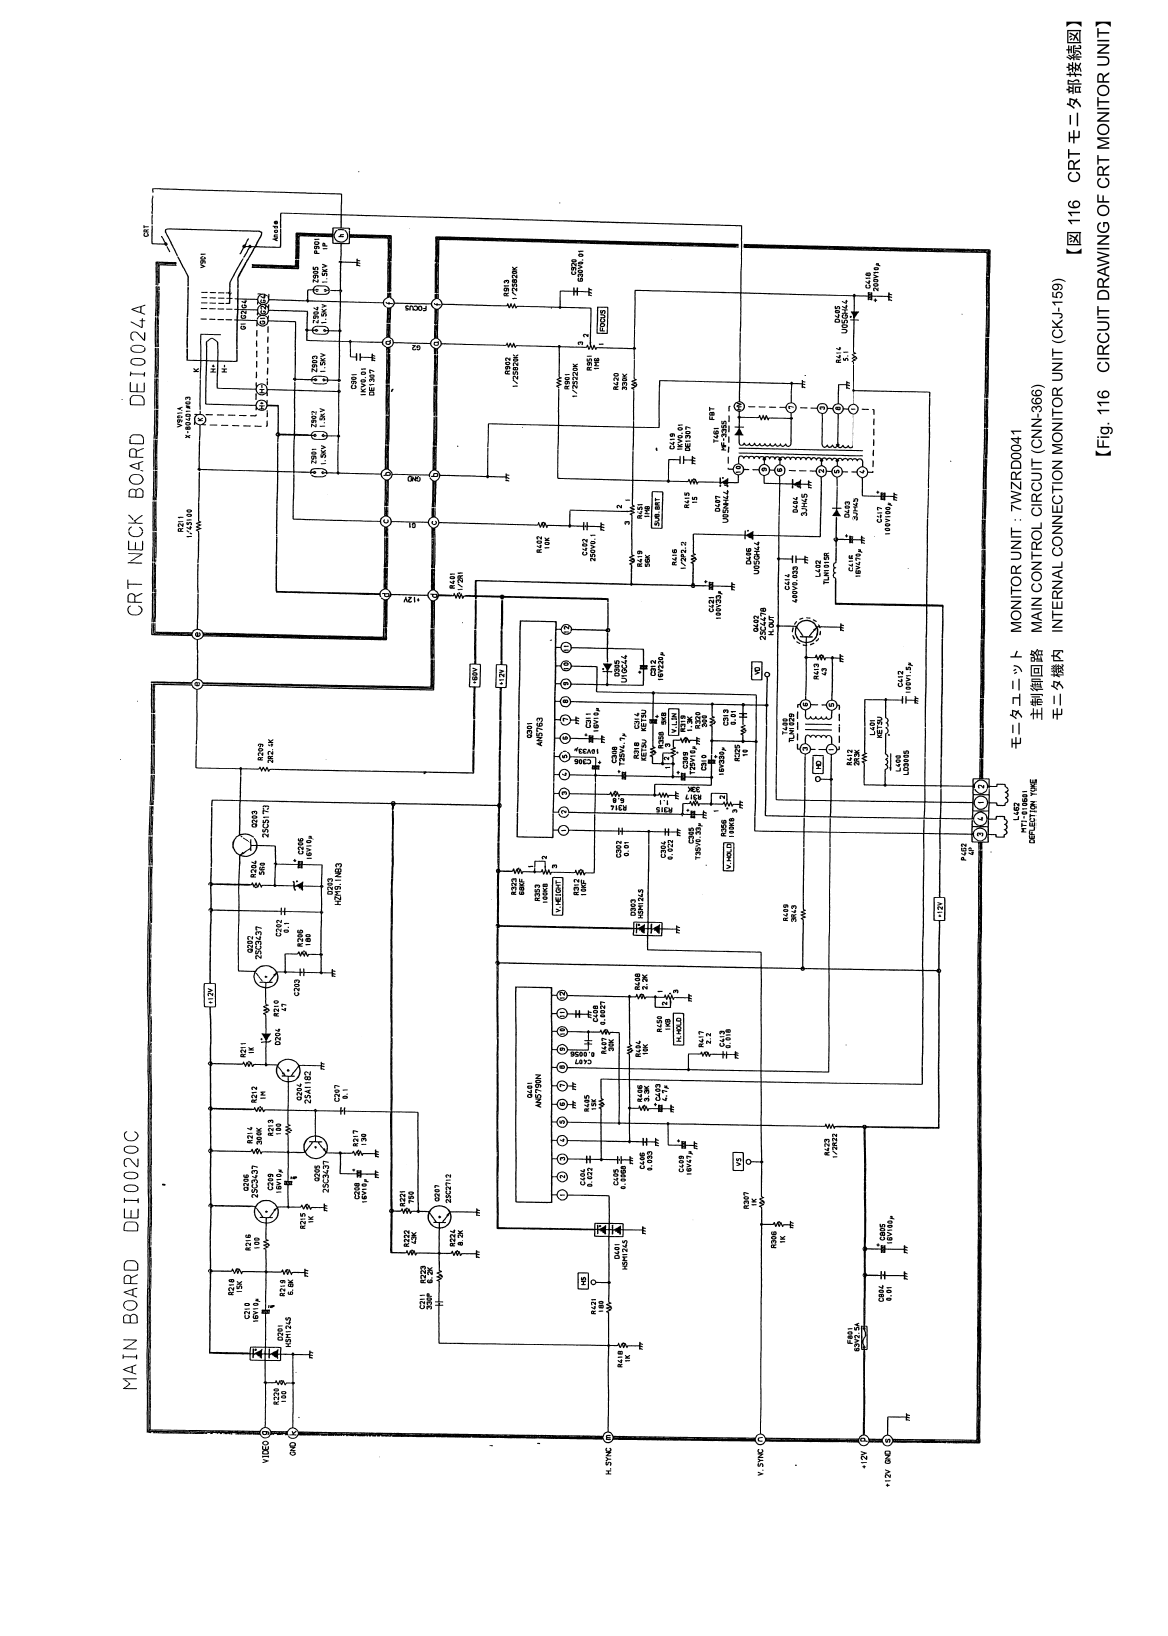  【図 116 CRT モニタ部接続図】 【Fig. 116    CIRCUIT DRAWING OF CRT MONITOR UNIT】  モニタユニット MONITOR UNIT：7WZRD0041  主制御回路  MAIN CONTROL CIRCUIT (CNN-366)  モニタ機内  INTERNAL CONNECTION MONITOR UNIT (CKJ-159) 